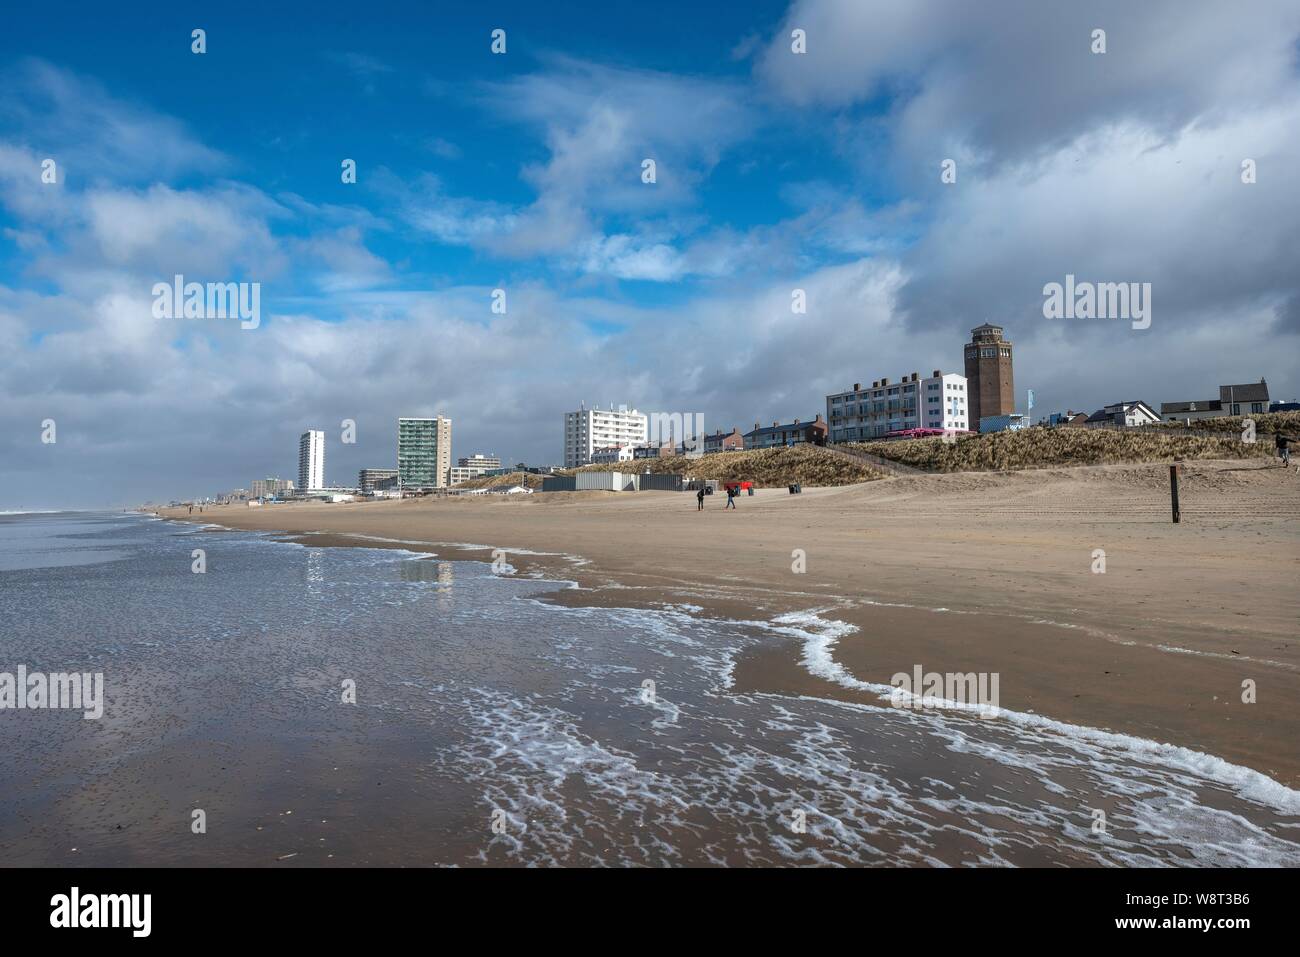 Nordsee Strand, Blick auf Wasserturm, Badeort und Holiday Resort, Zandvoort aan Zee, Nordholland, Niederlande, Niederlande Stockfoto